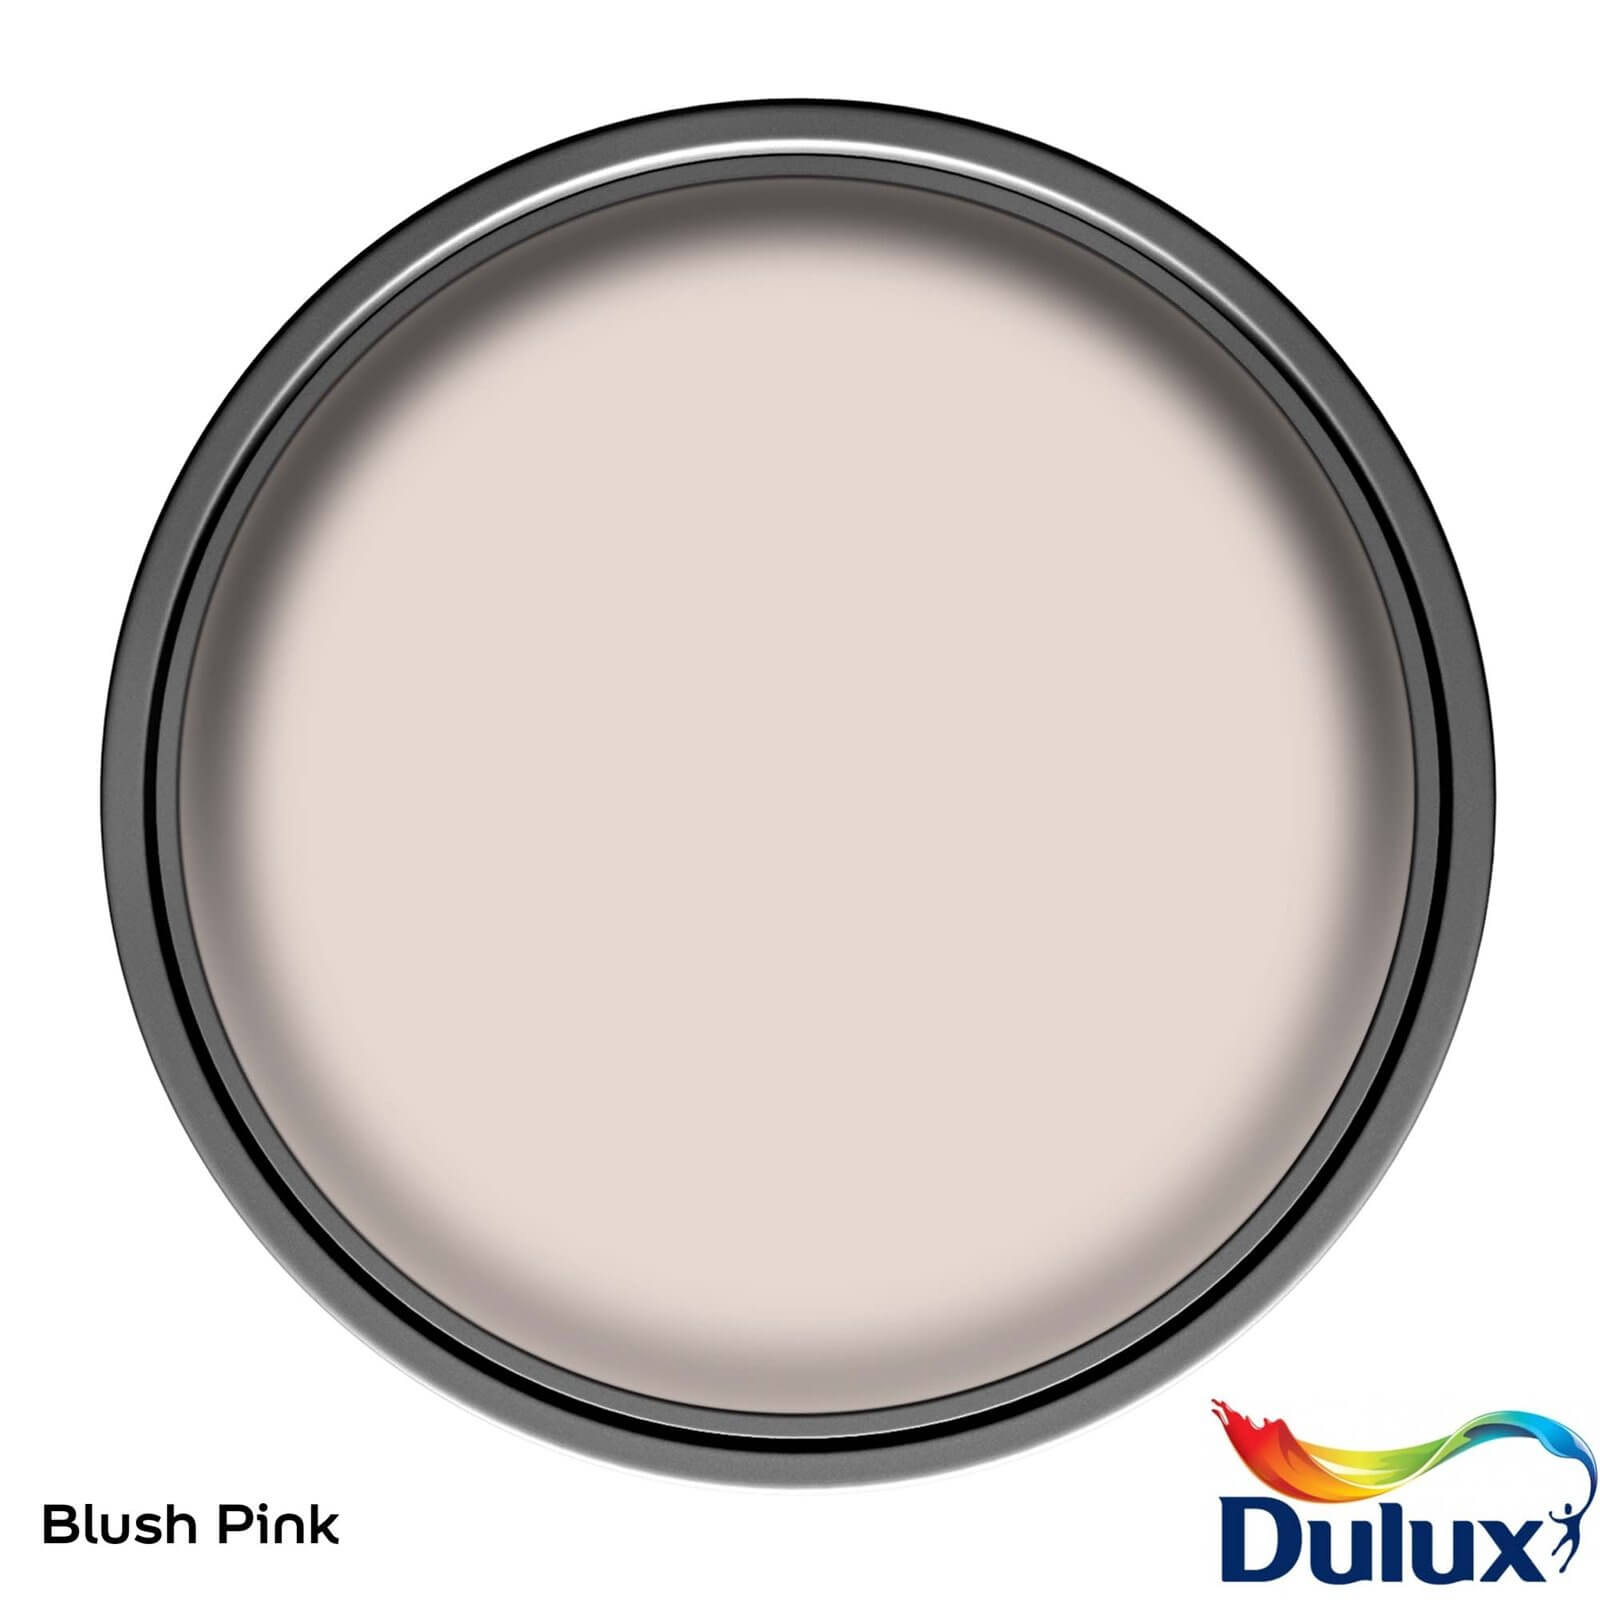 Dulux Easycare Bathroom Blush Pink Soft Sheen Paint - 2.5L